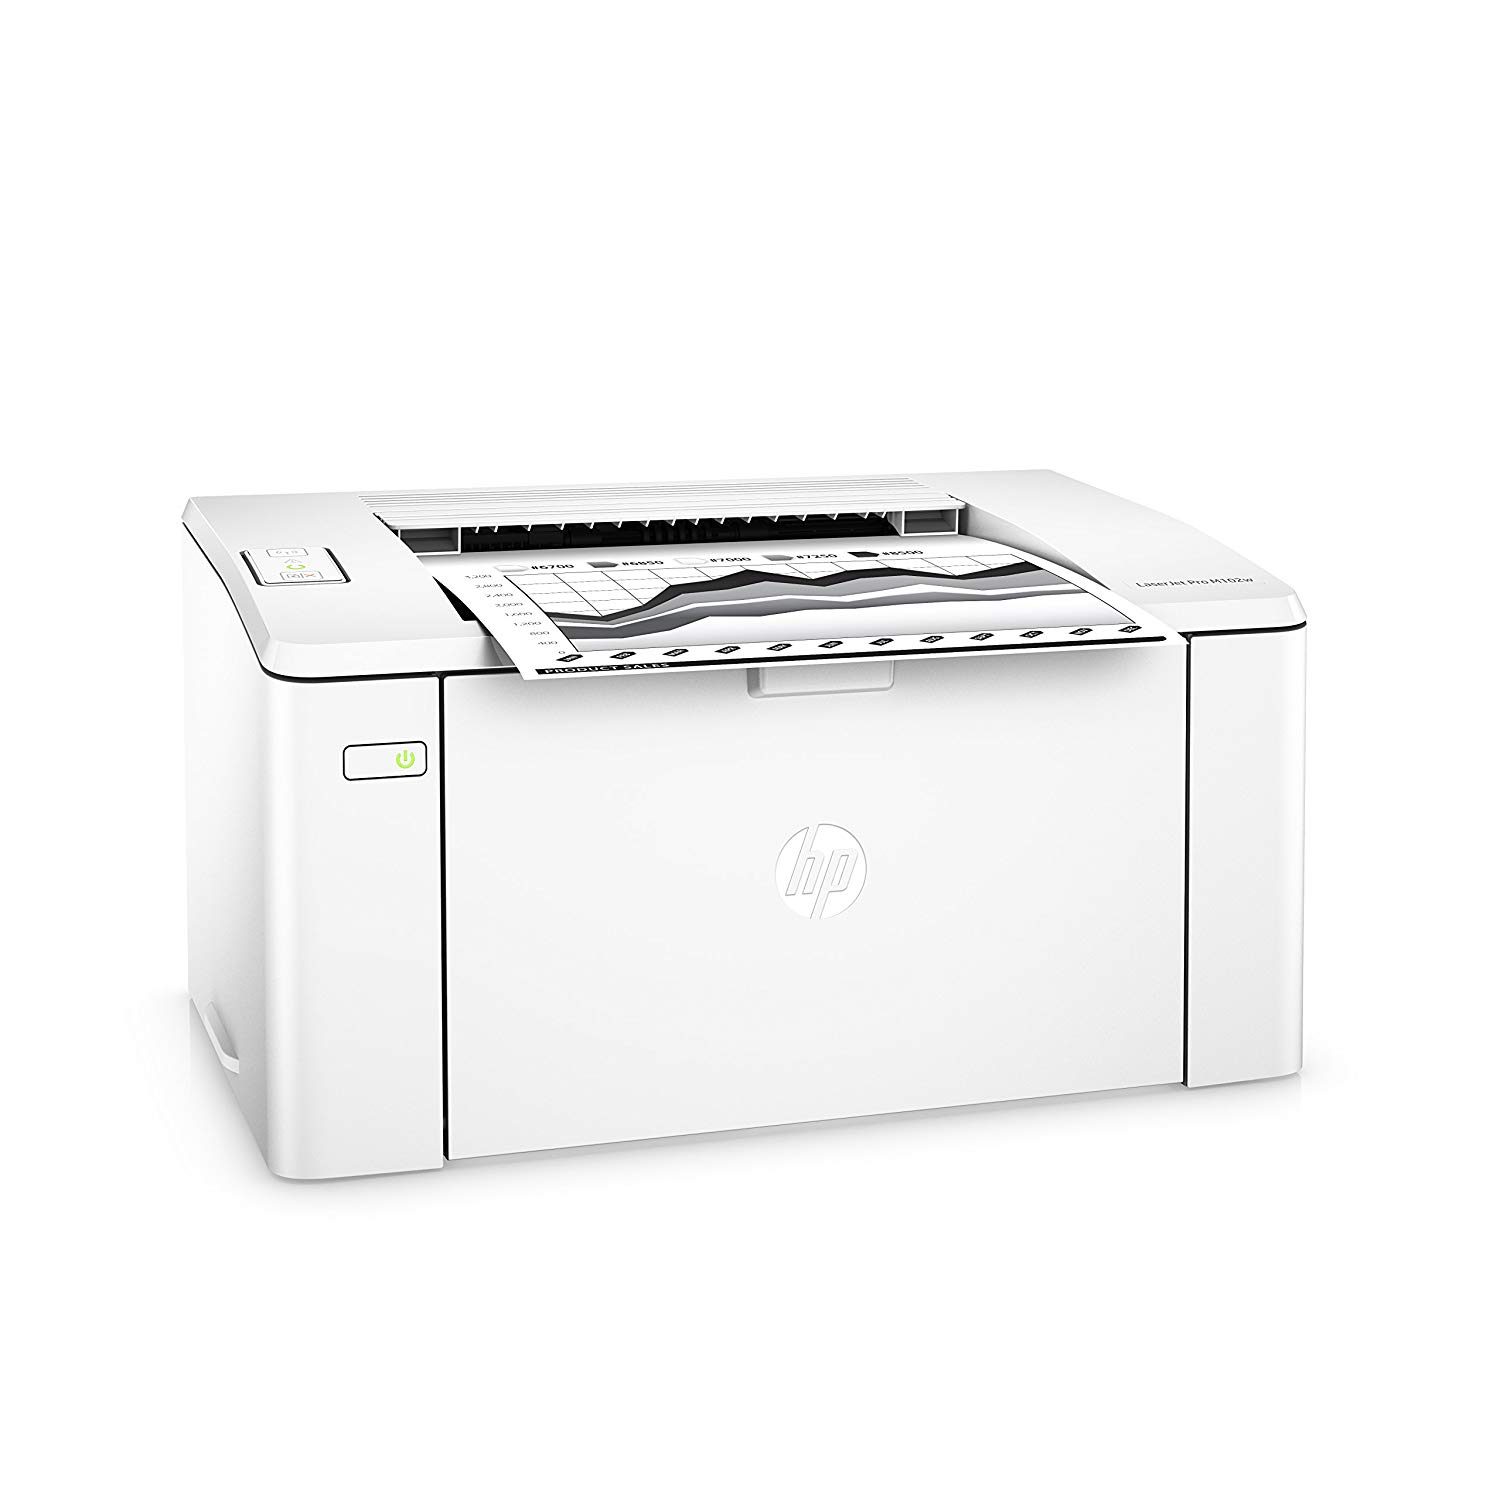 HP Беспроводной лазерный принтер  LaserJet Pro M102w (G3Q35A). Заменяет лазерный принтер  P1102